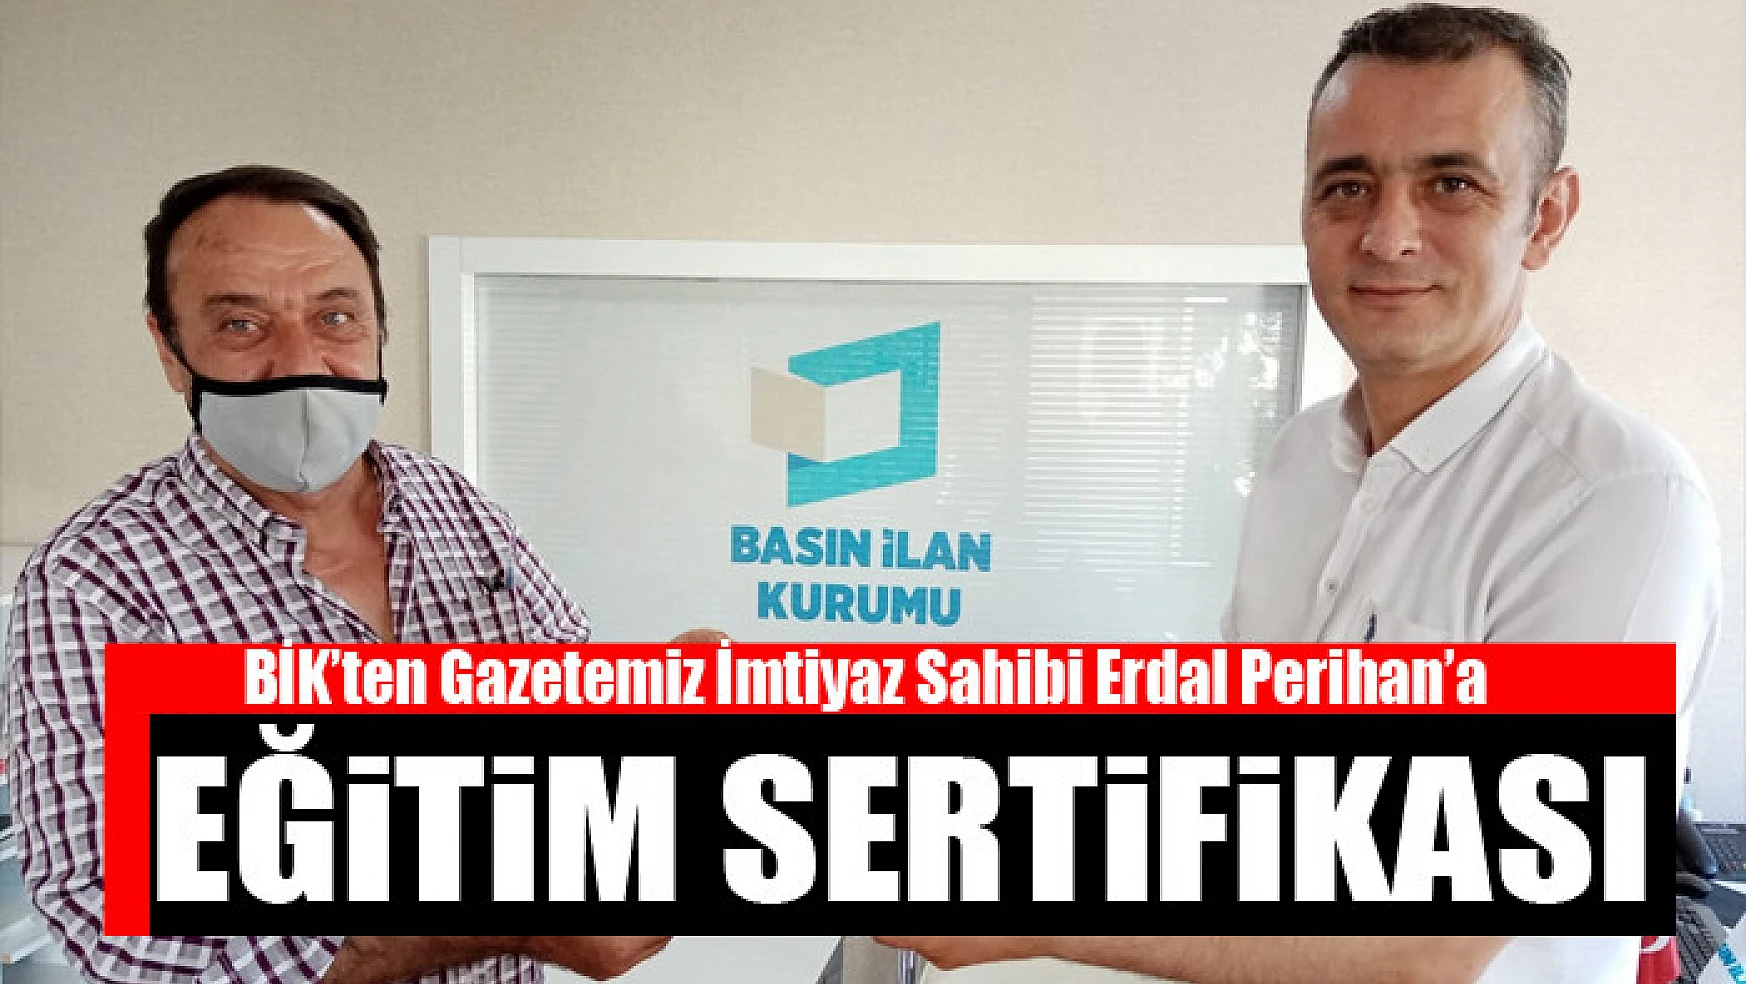 BİK'ten Gazetemiz İmtiyaz Sahibi Erdal Perihan'a sertifika